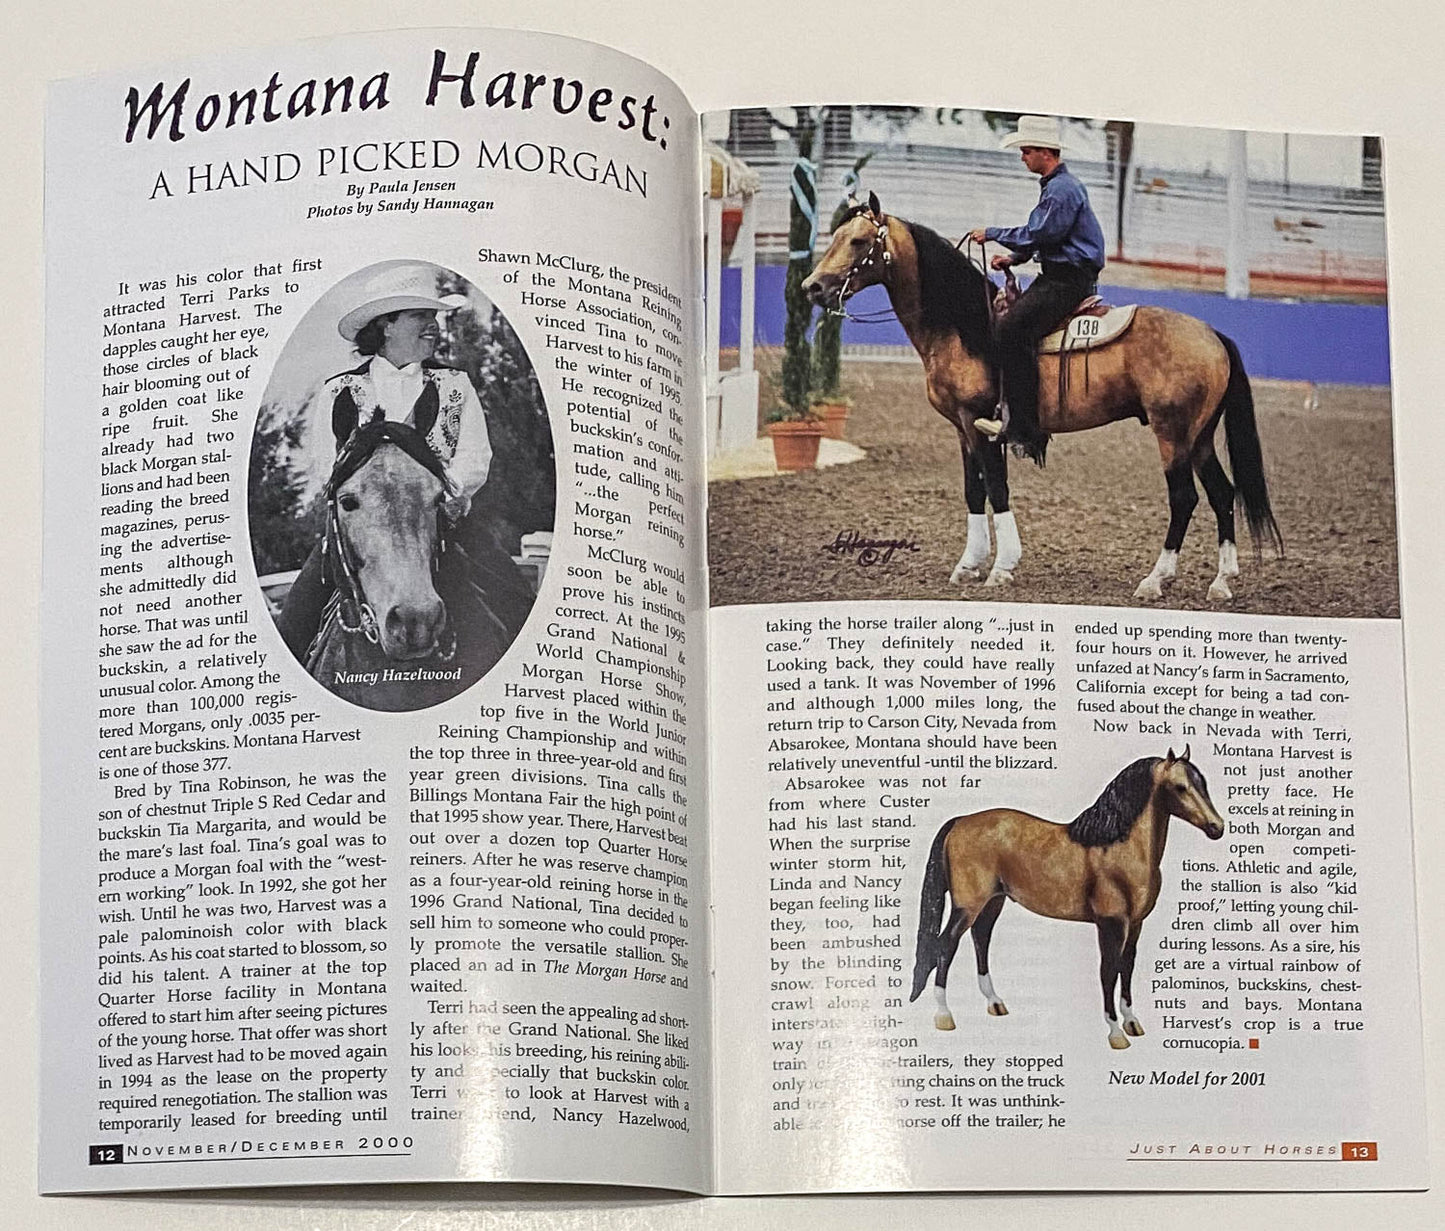 Just About Horses Magazine Vol. 27, No. 6, 2000 Nov/Dec